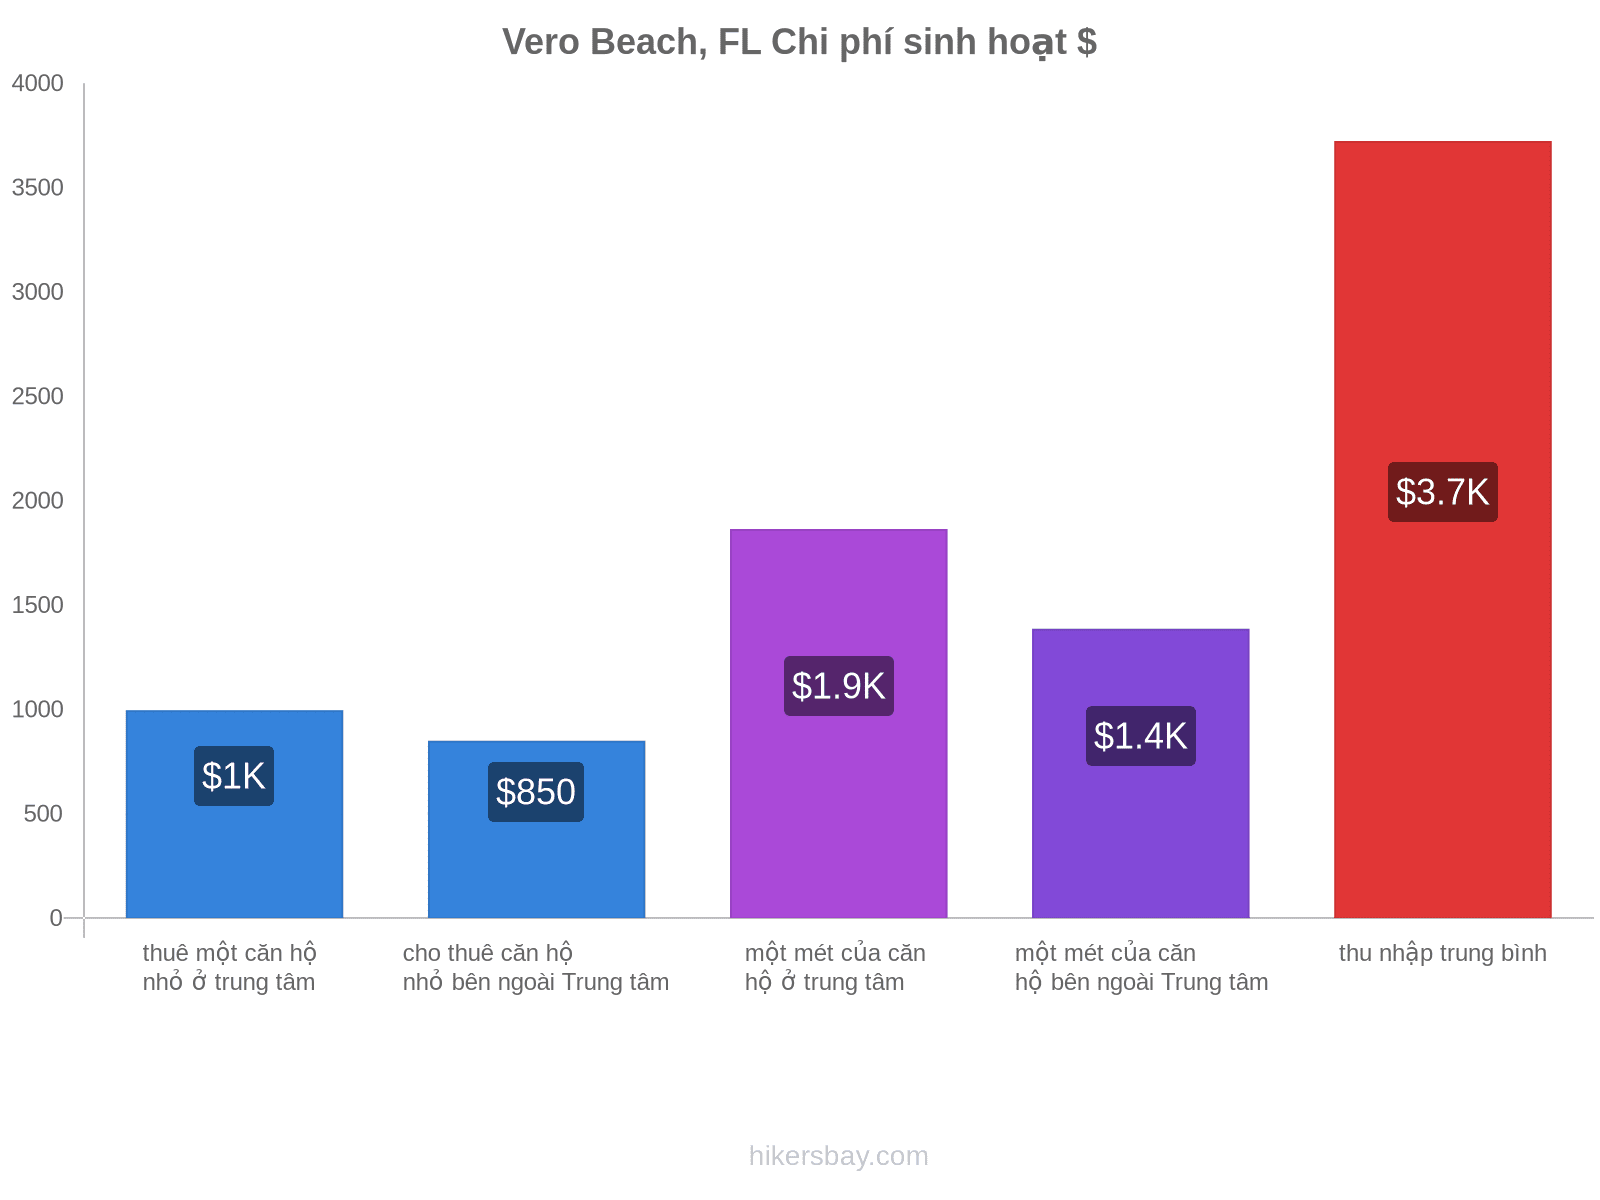 Vero Beach, FL chi phí sinh hoạt hikersbay.com